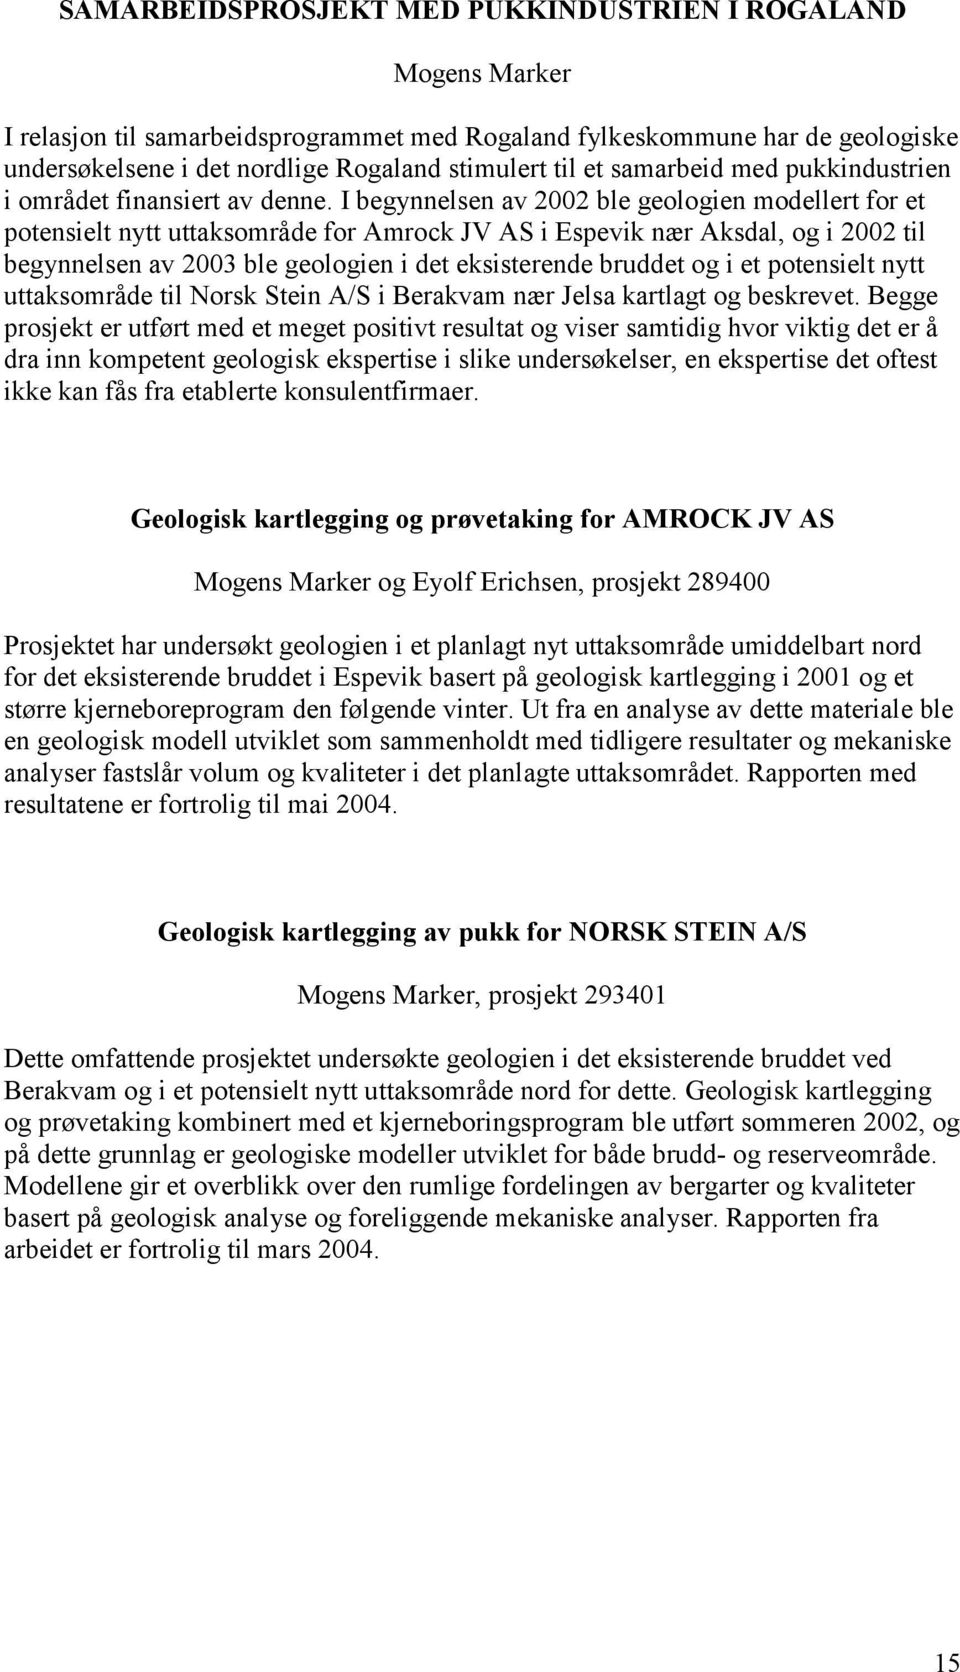 I begynnelsen av 2002 ble geologien modellert for et potensielt nytt uttaksområde for Amrock JV AS i Espevik nær Aksdal, og i 2002 til begynnelsen av 2003 ble geologien i det eksisterende bruddet og